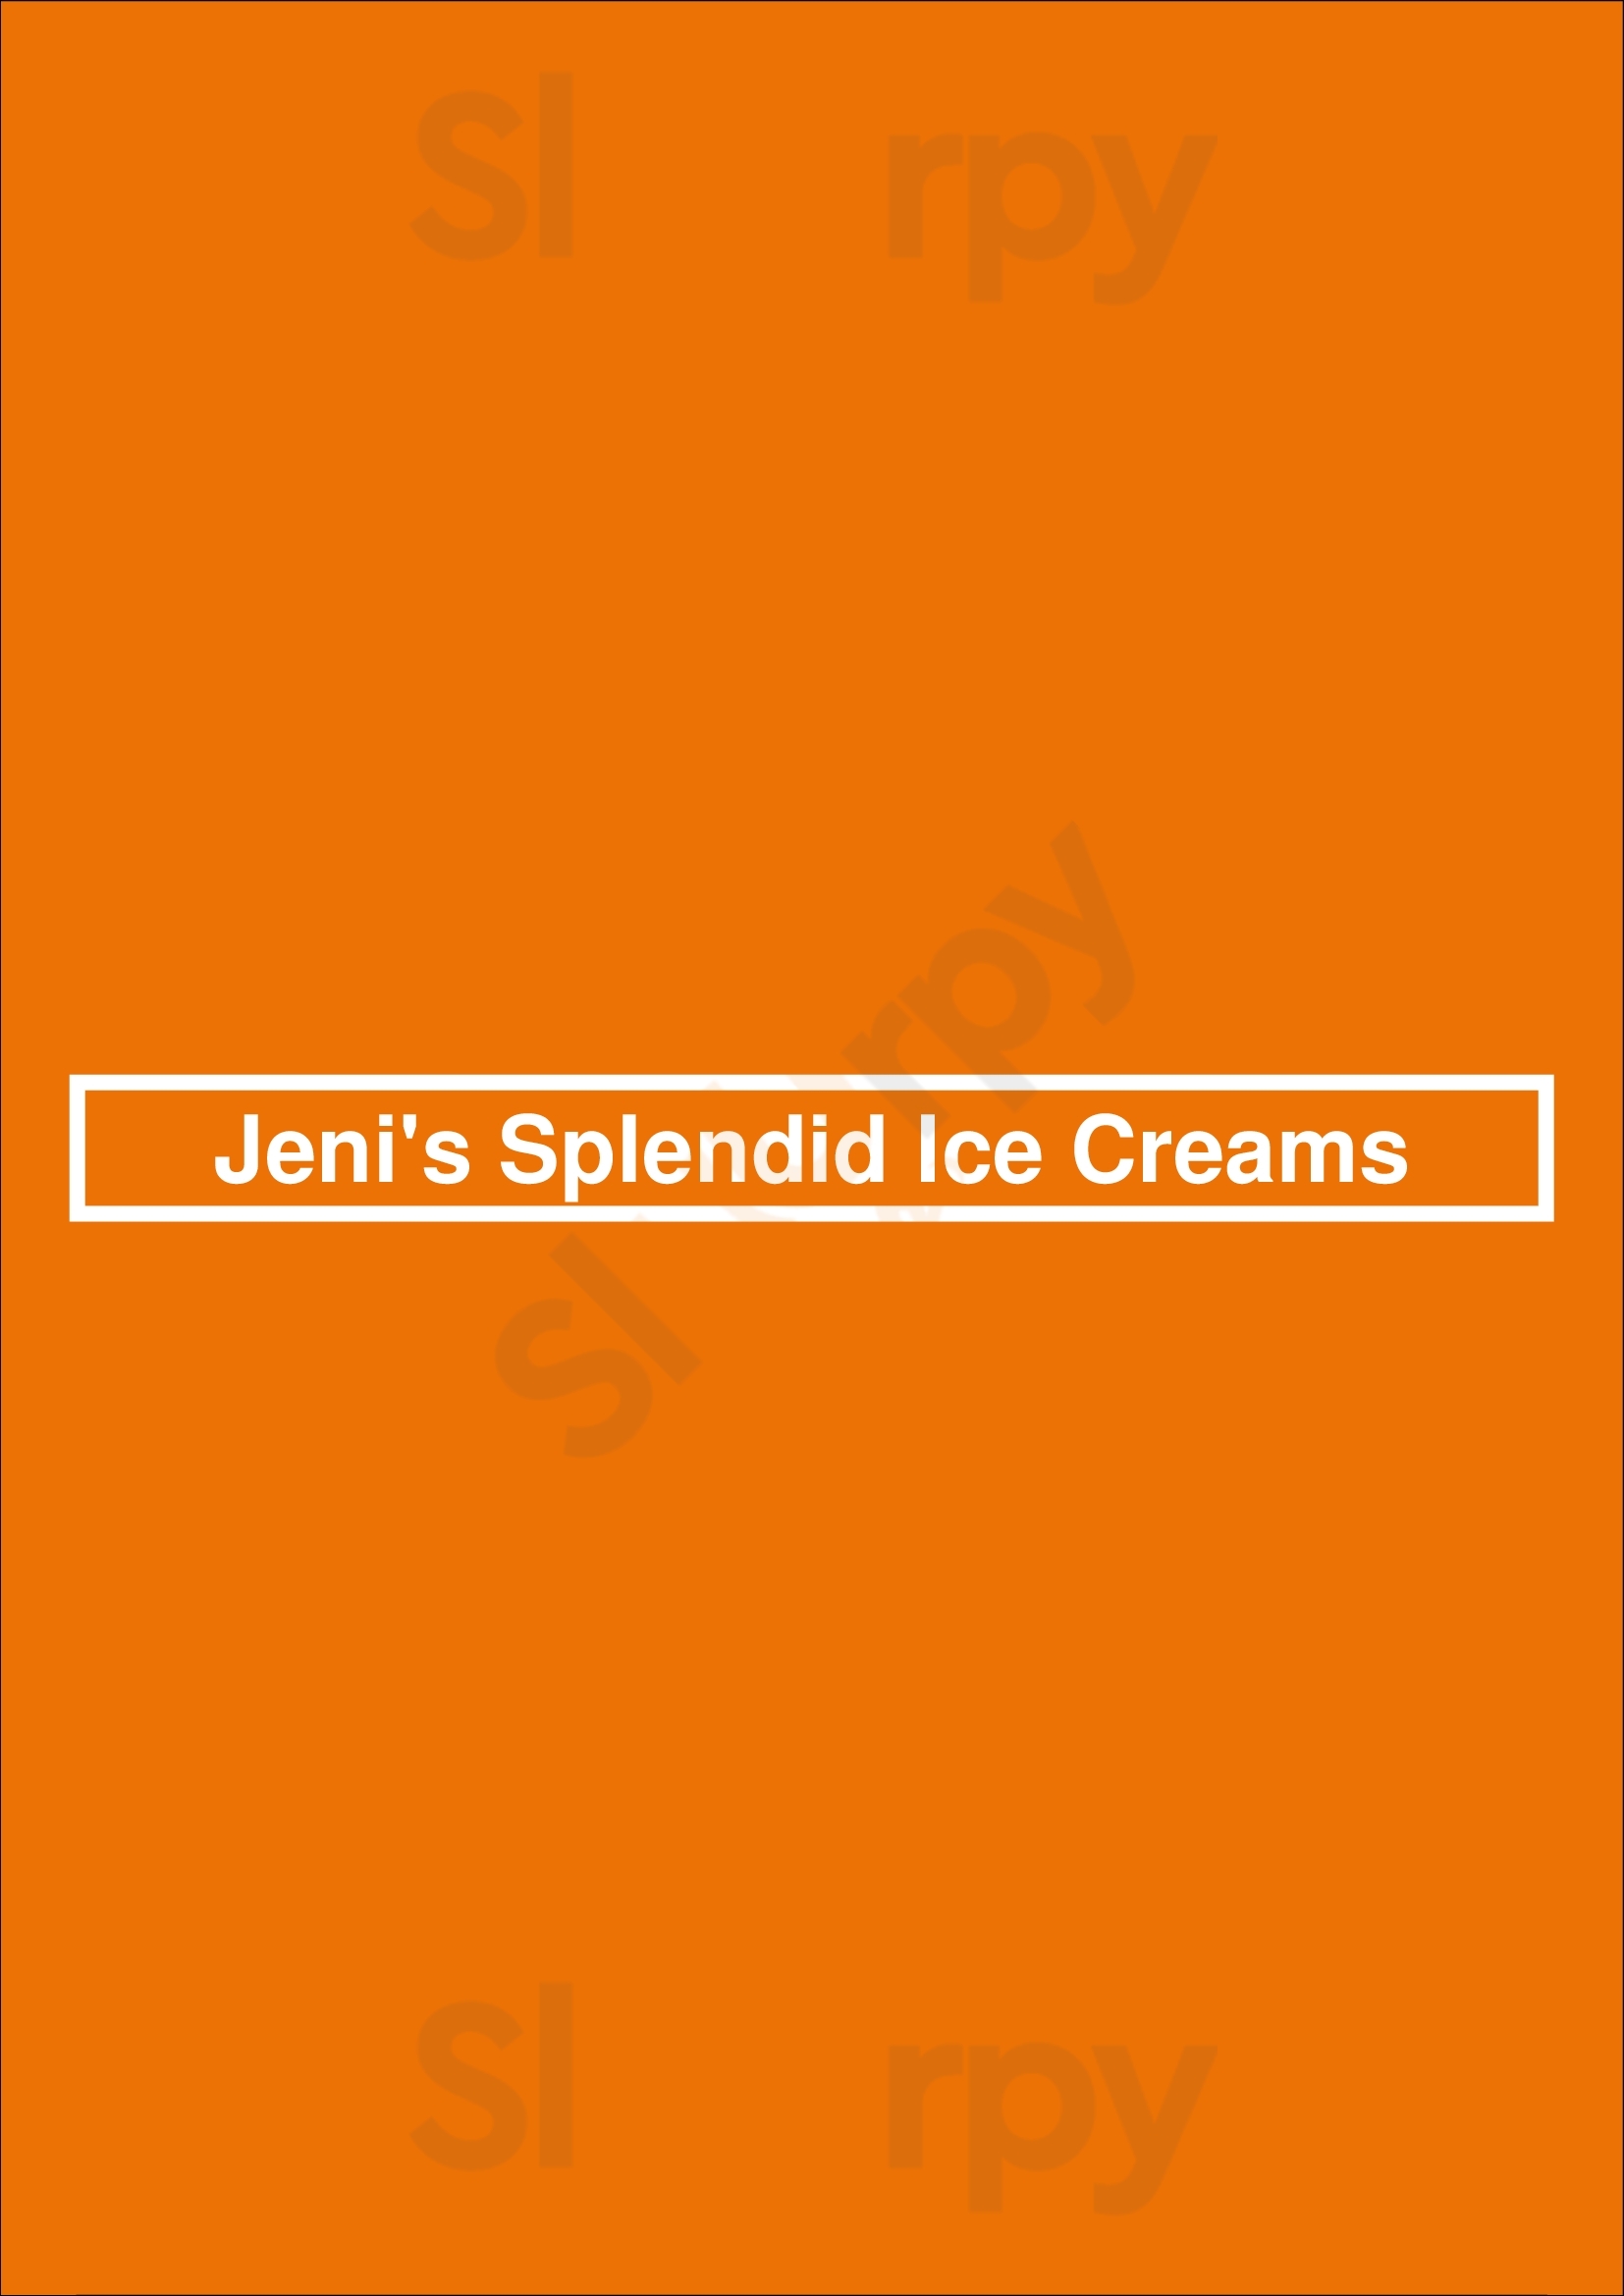 Jeni's Splendid Ice Creams Charleston Menu - 1